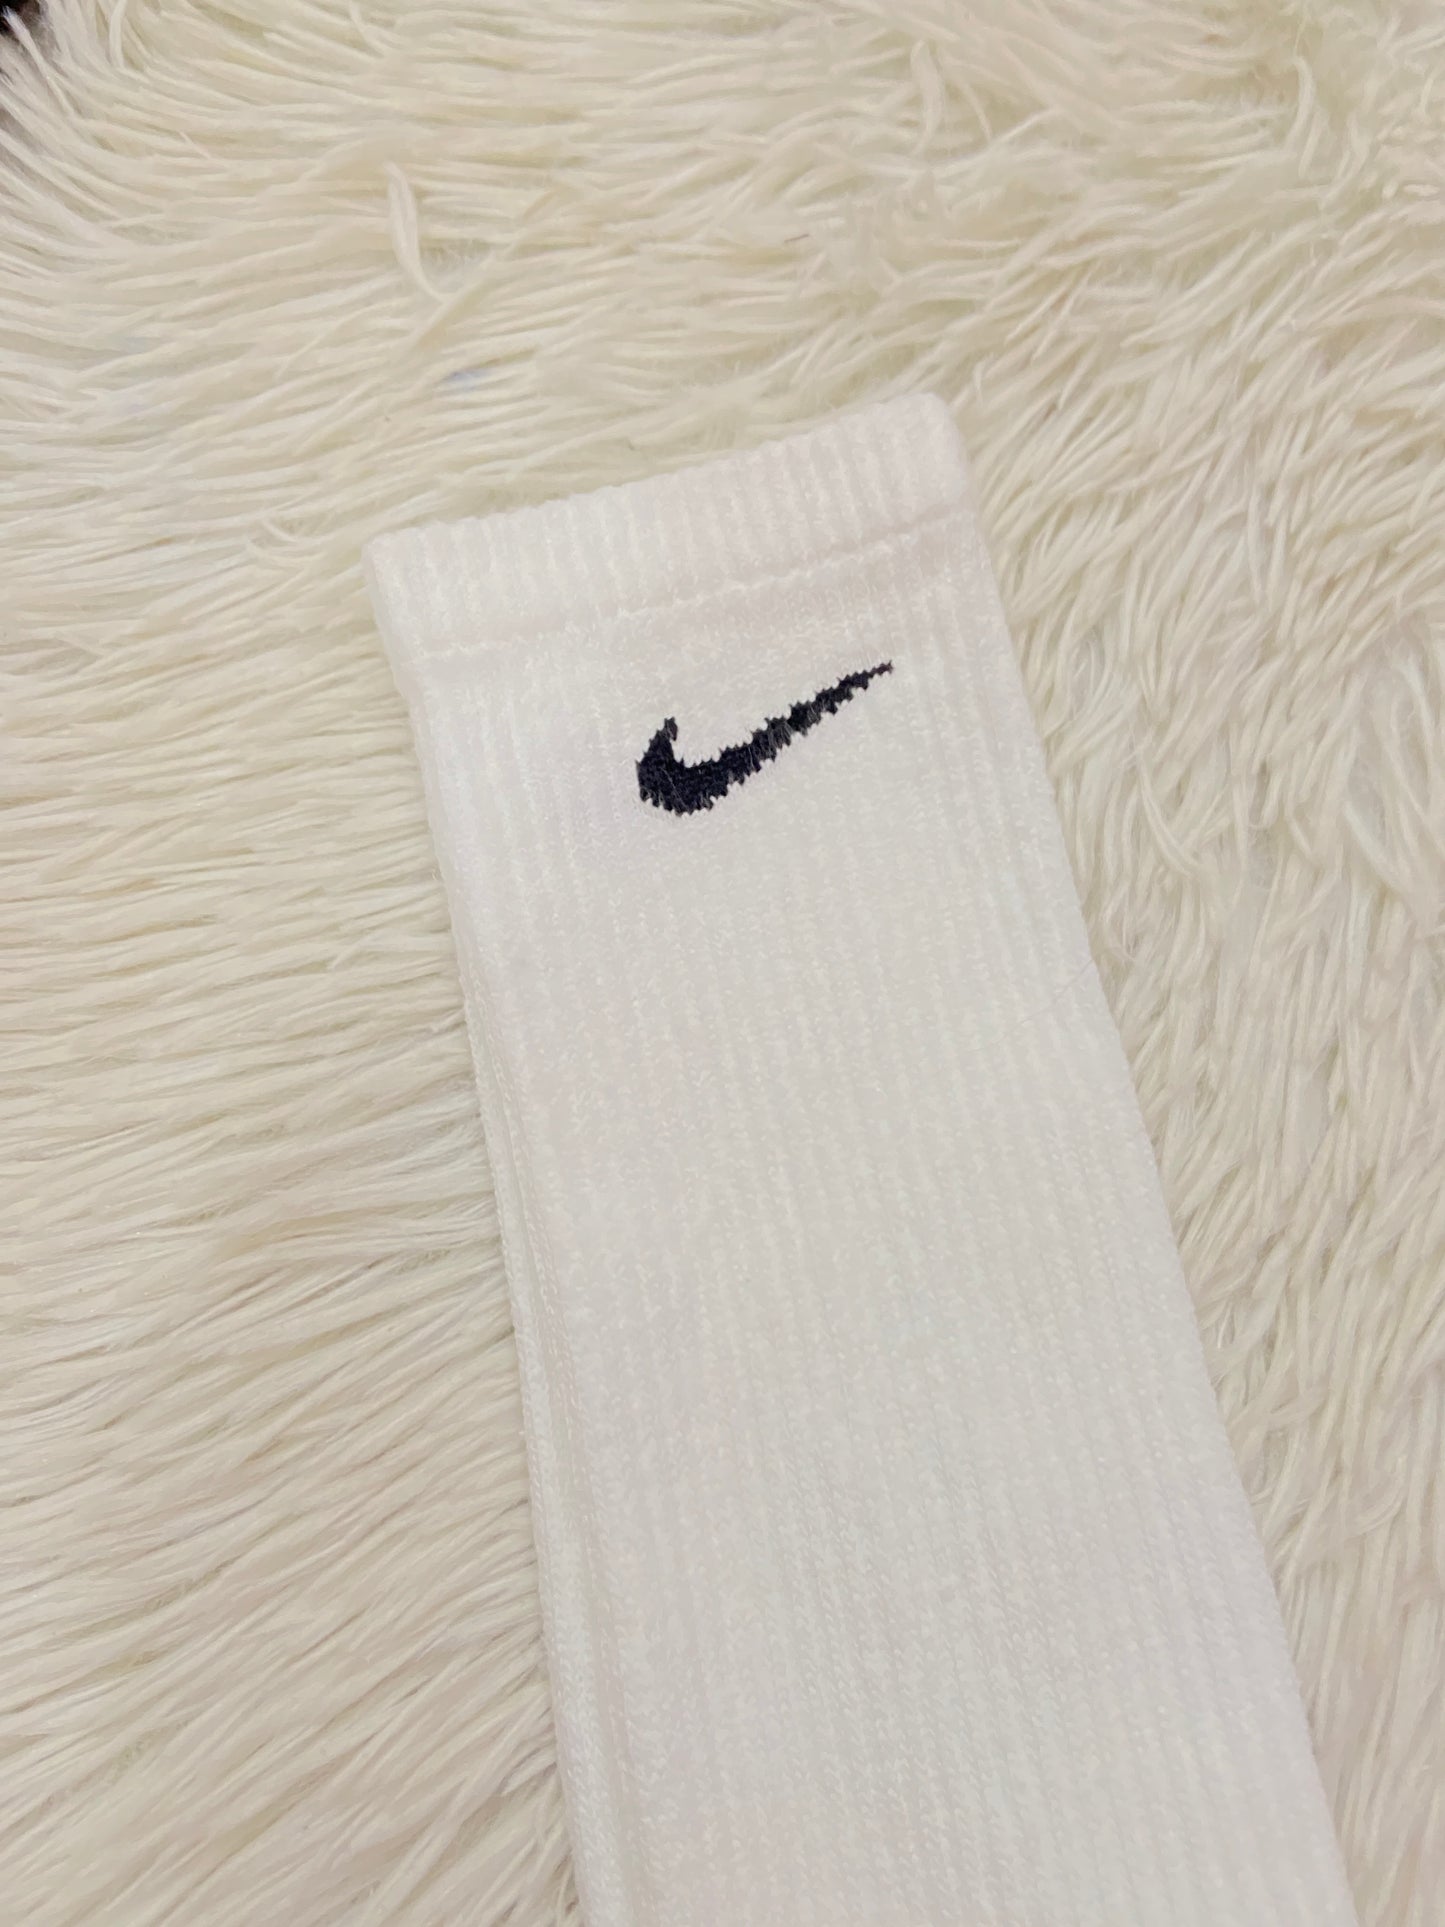 Medias Nike original blanca con logotipo de la marca en negro, altas.